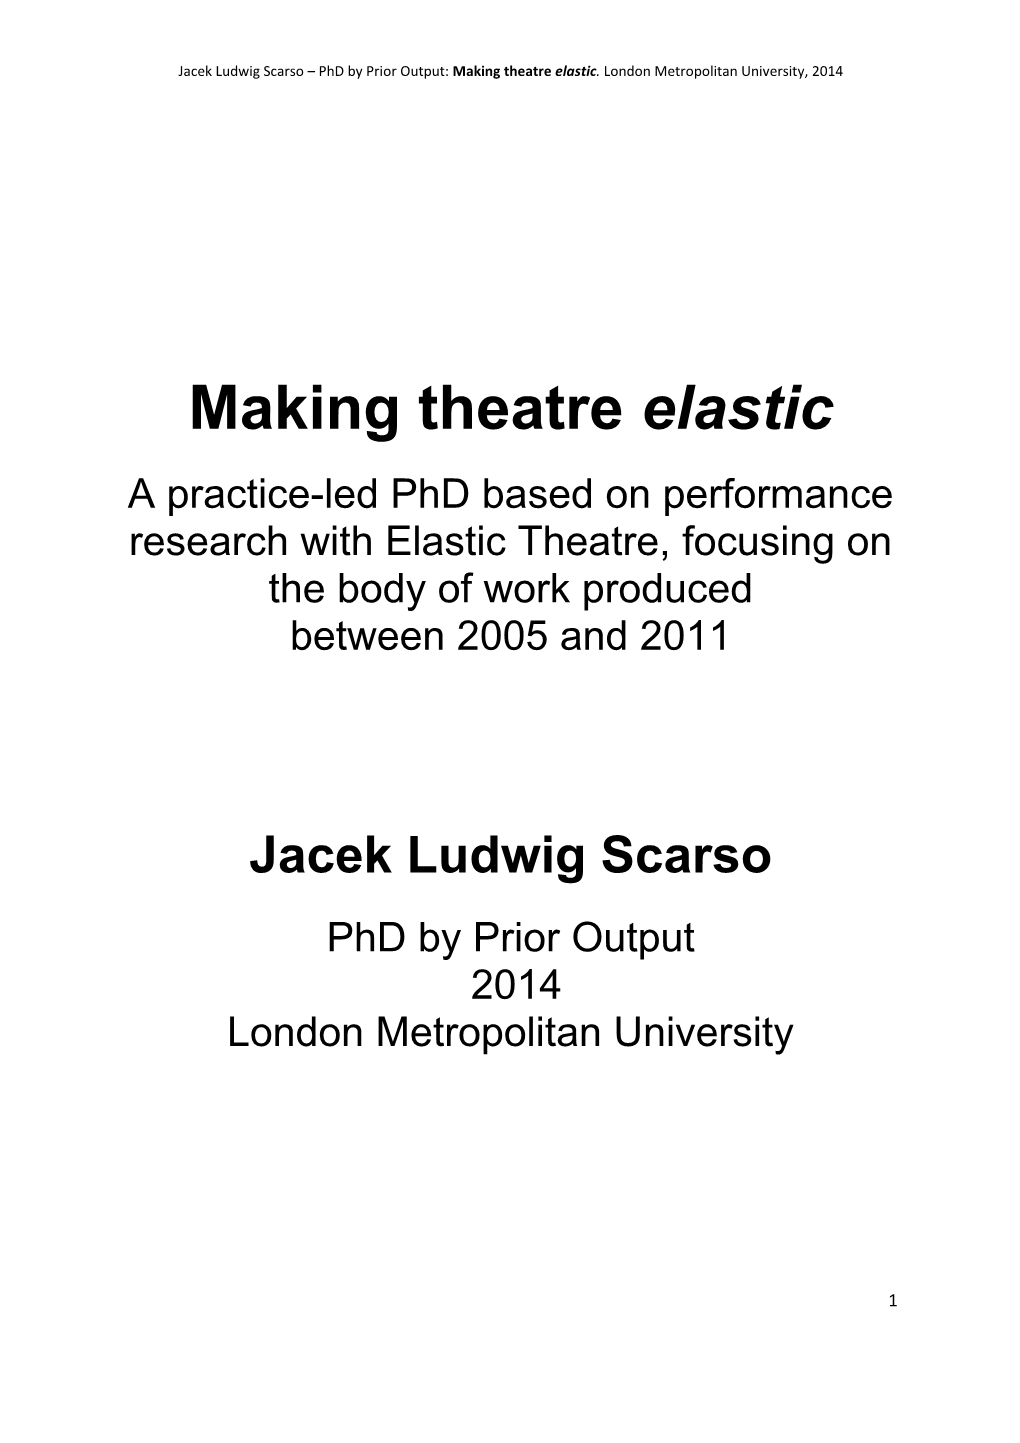 Making Theatre Elastic